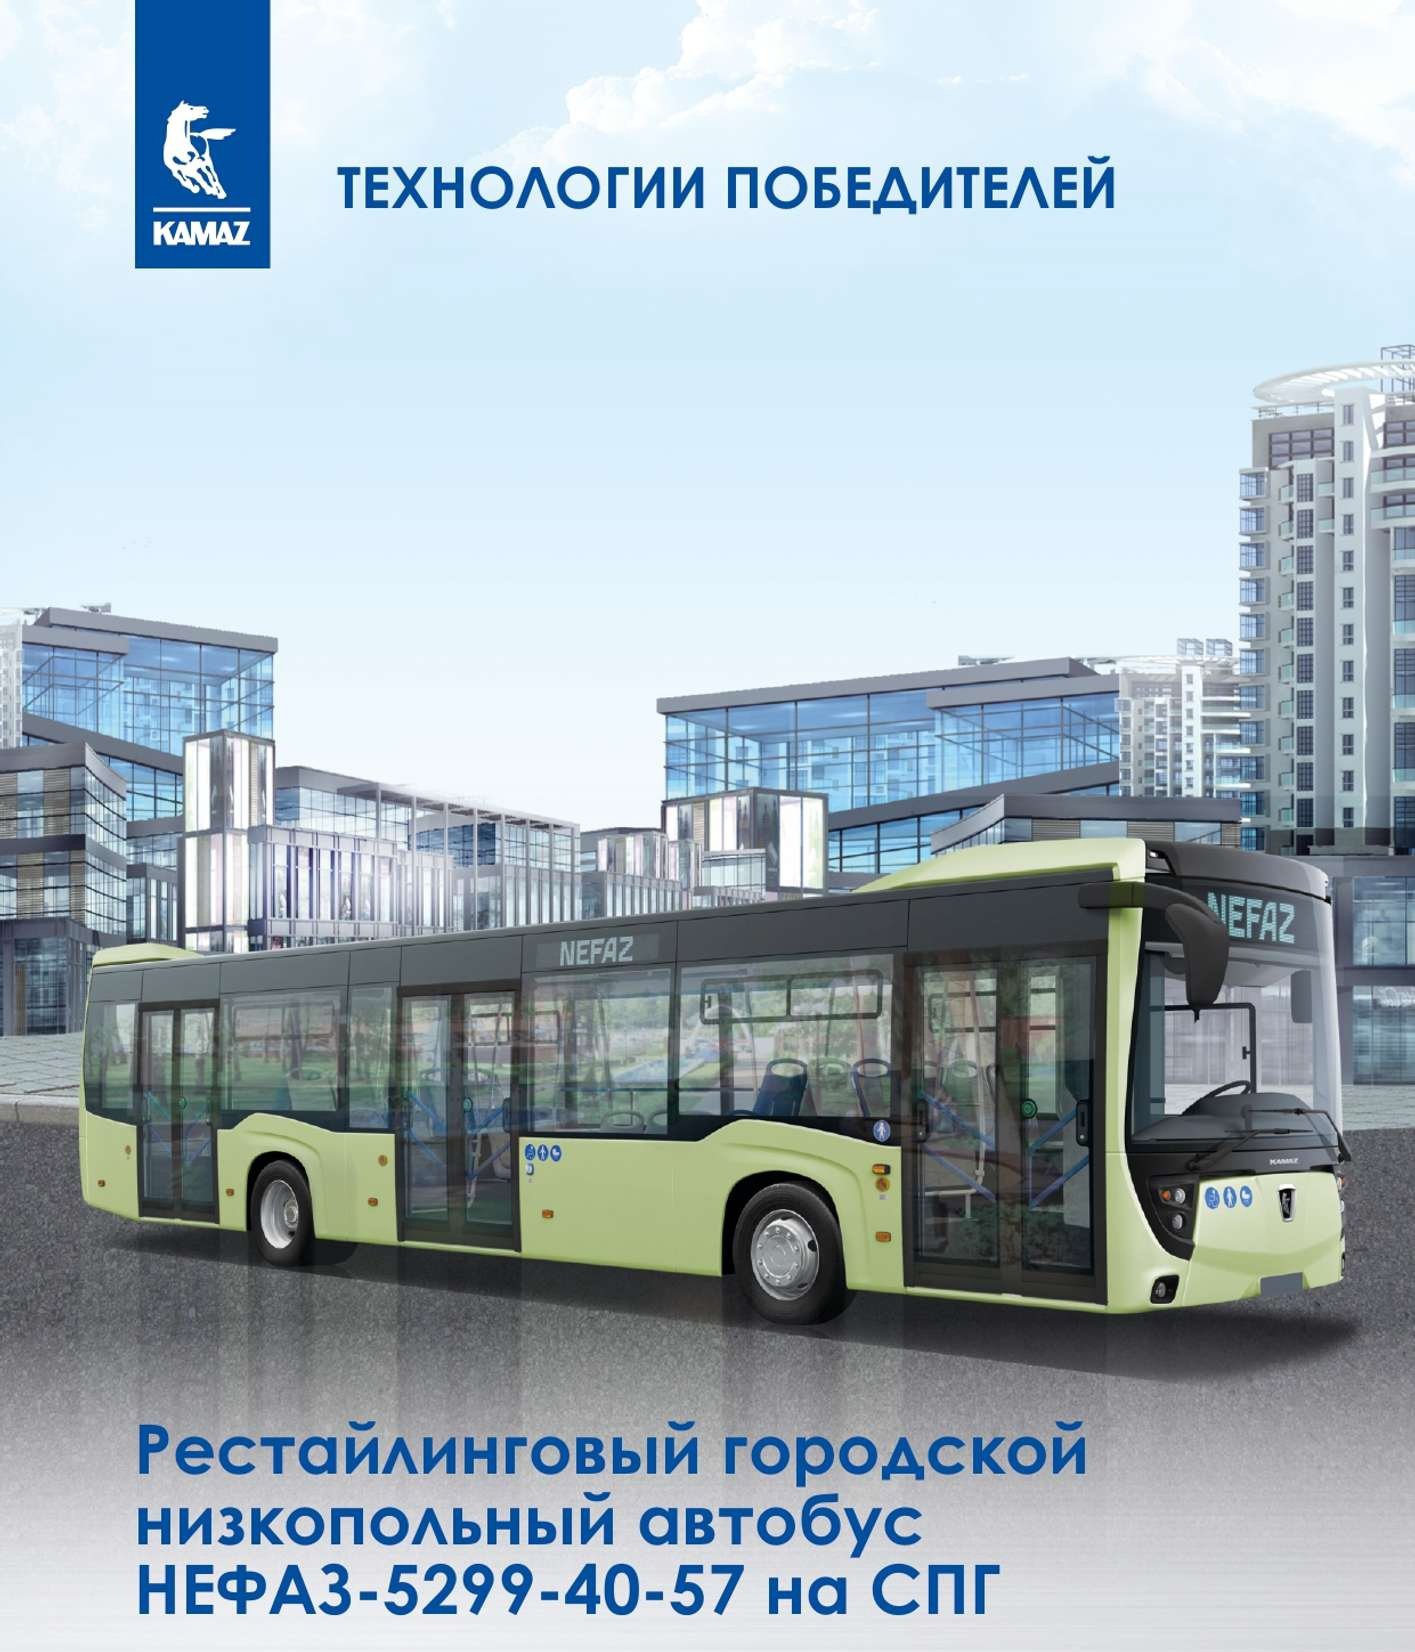 «КАМАЗ» поможет Санкт-Петербургу реализовать транспортную реформу 